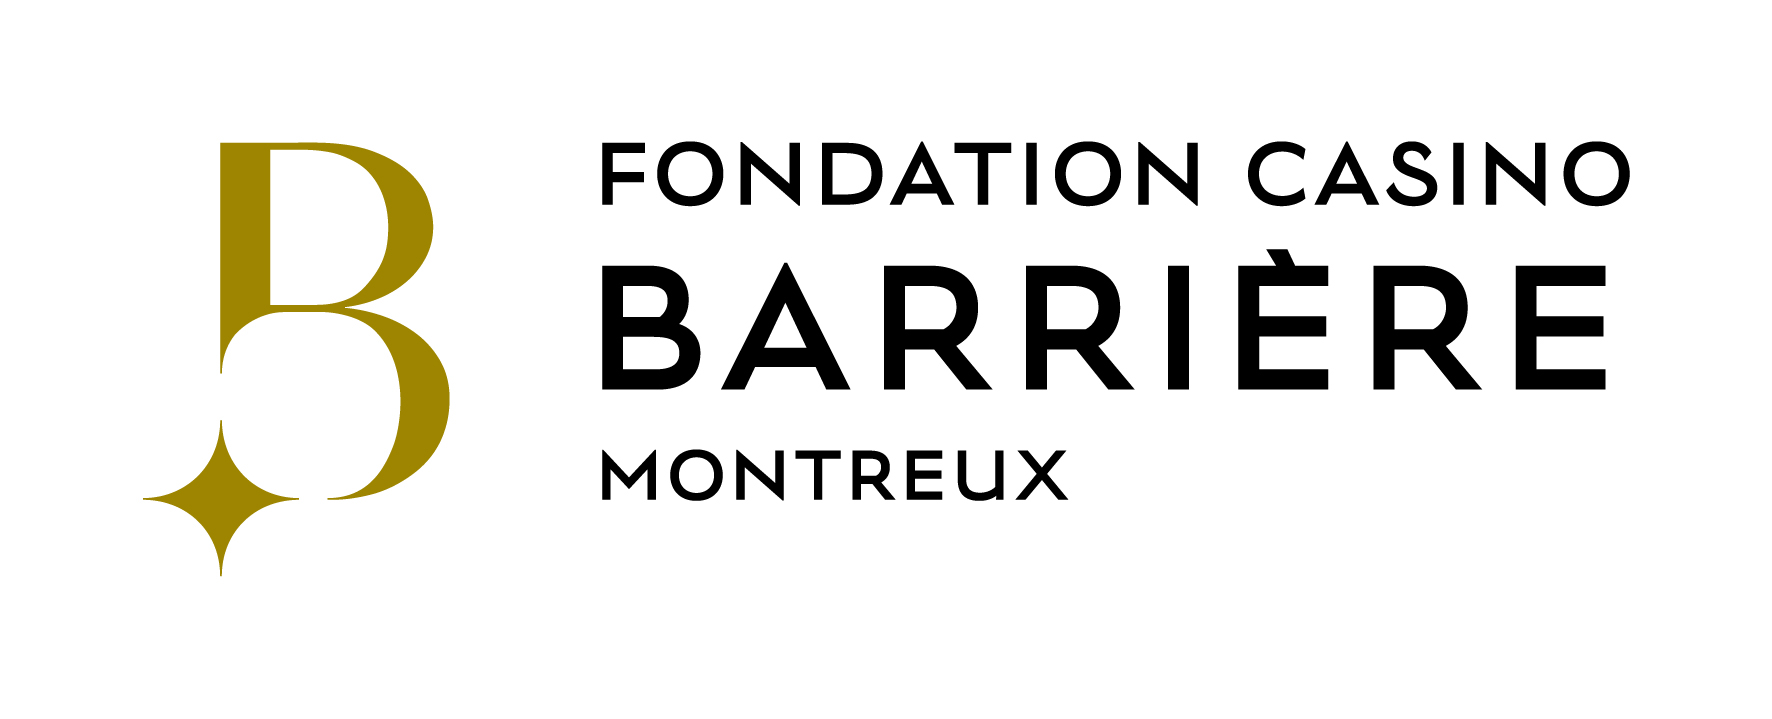 Un grand merci à la Fondation Casino Barrière Montreux pour son soutien !